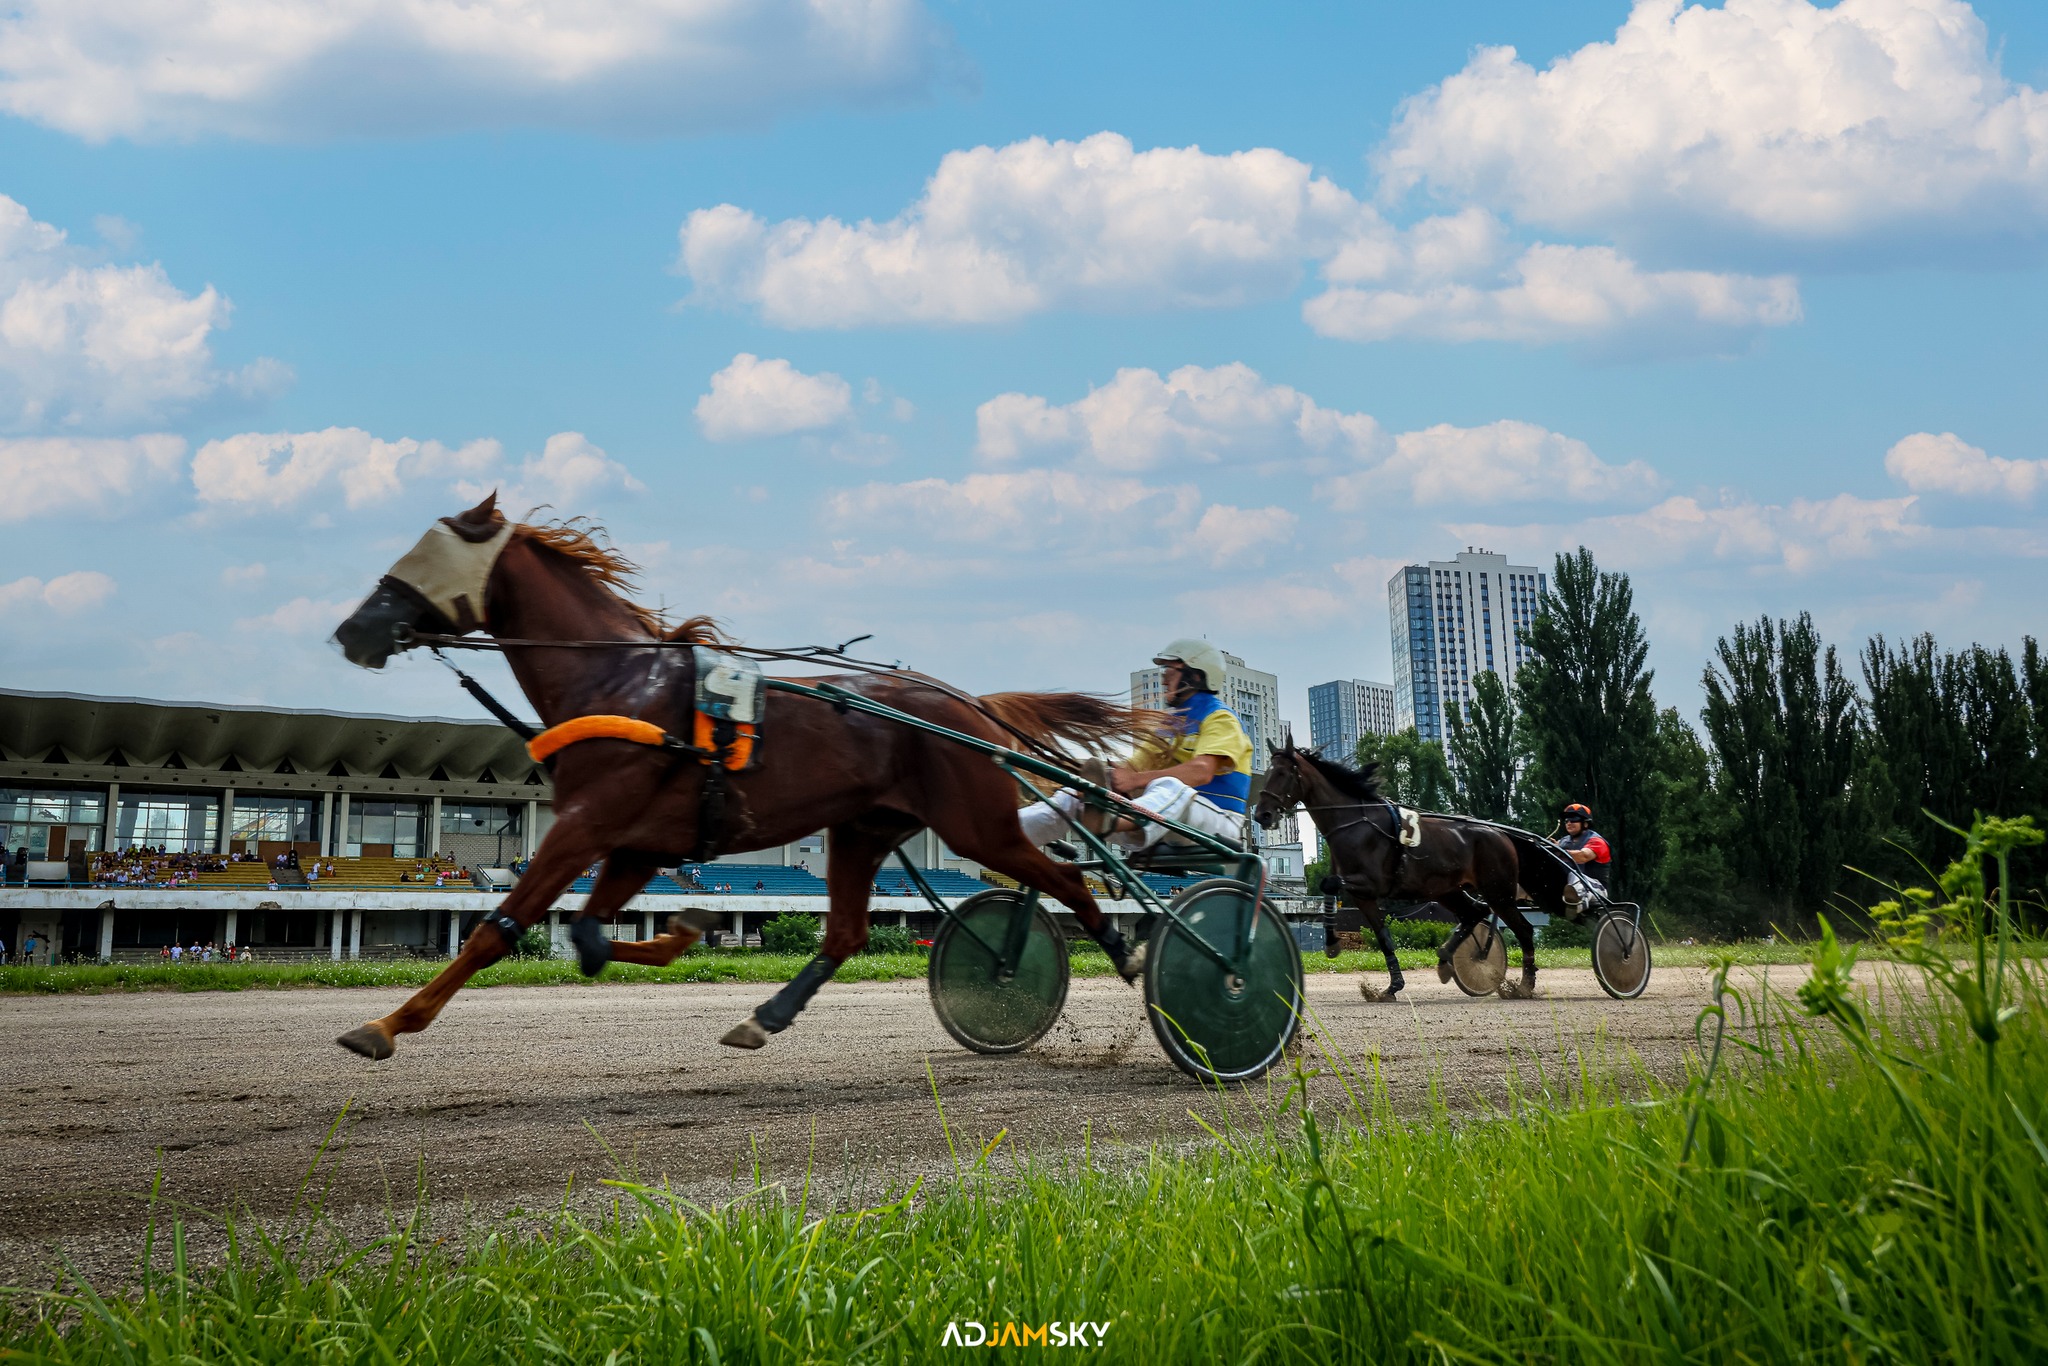 У неділю, 23 липня, на Київському іподромі пройдуть змагання коней рисистих порід